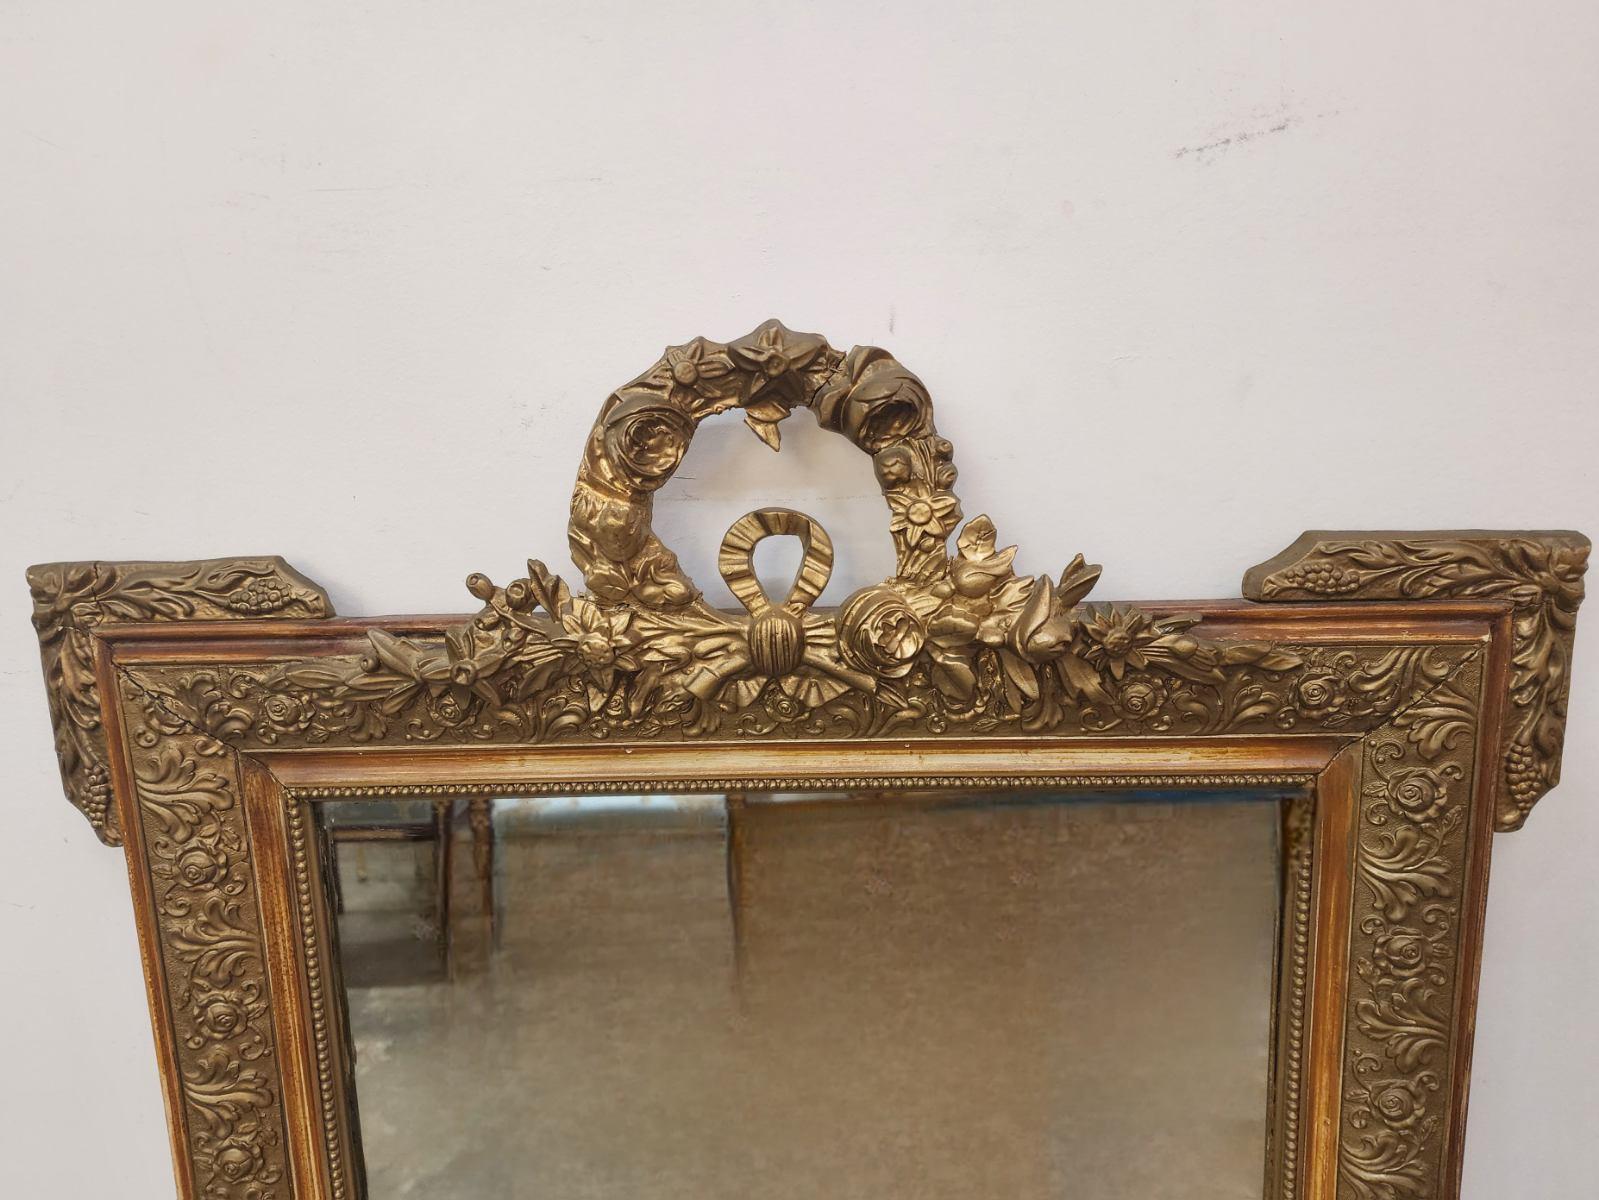 Ce miroir à cadre peint et doré de style Louis XV présente des détails complexes et des éléments ornementaux caractéristiques de l'époque. Les délicats accents dorés et les motifs peints sur le cadre capturent l'opulence et l'élégance de l'époque